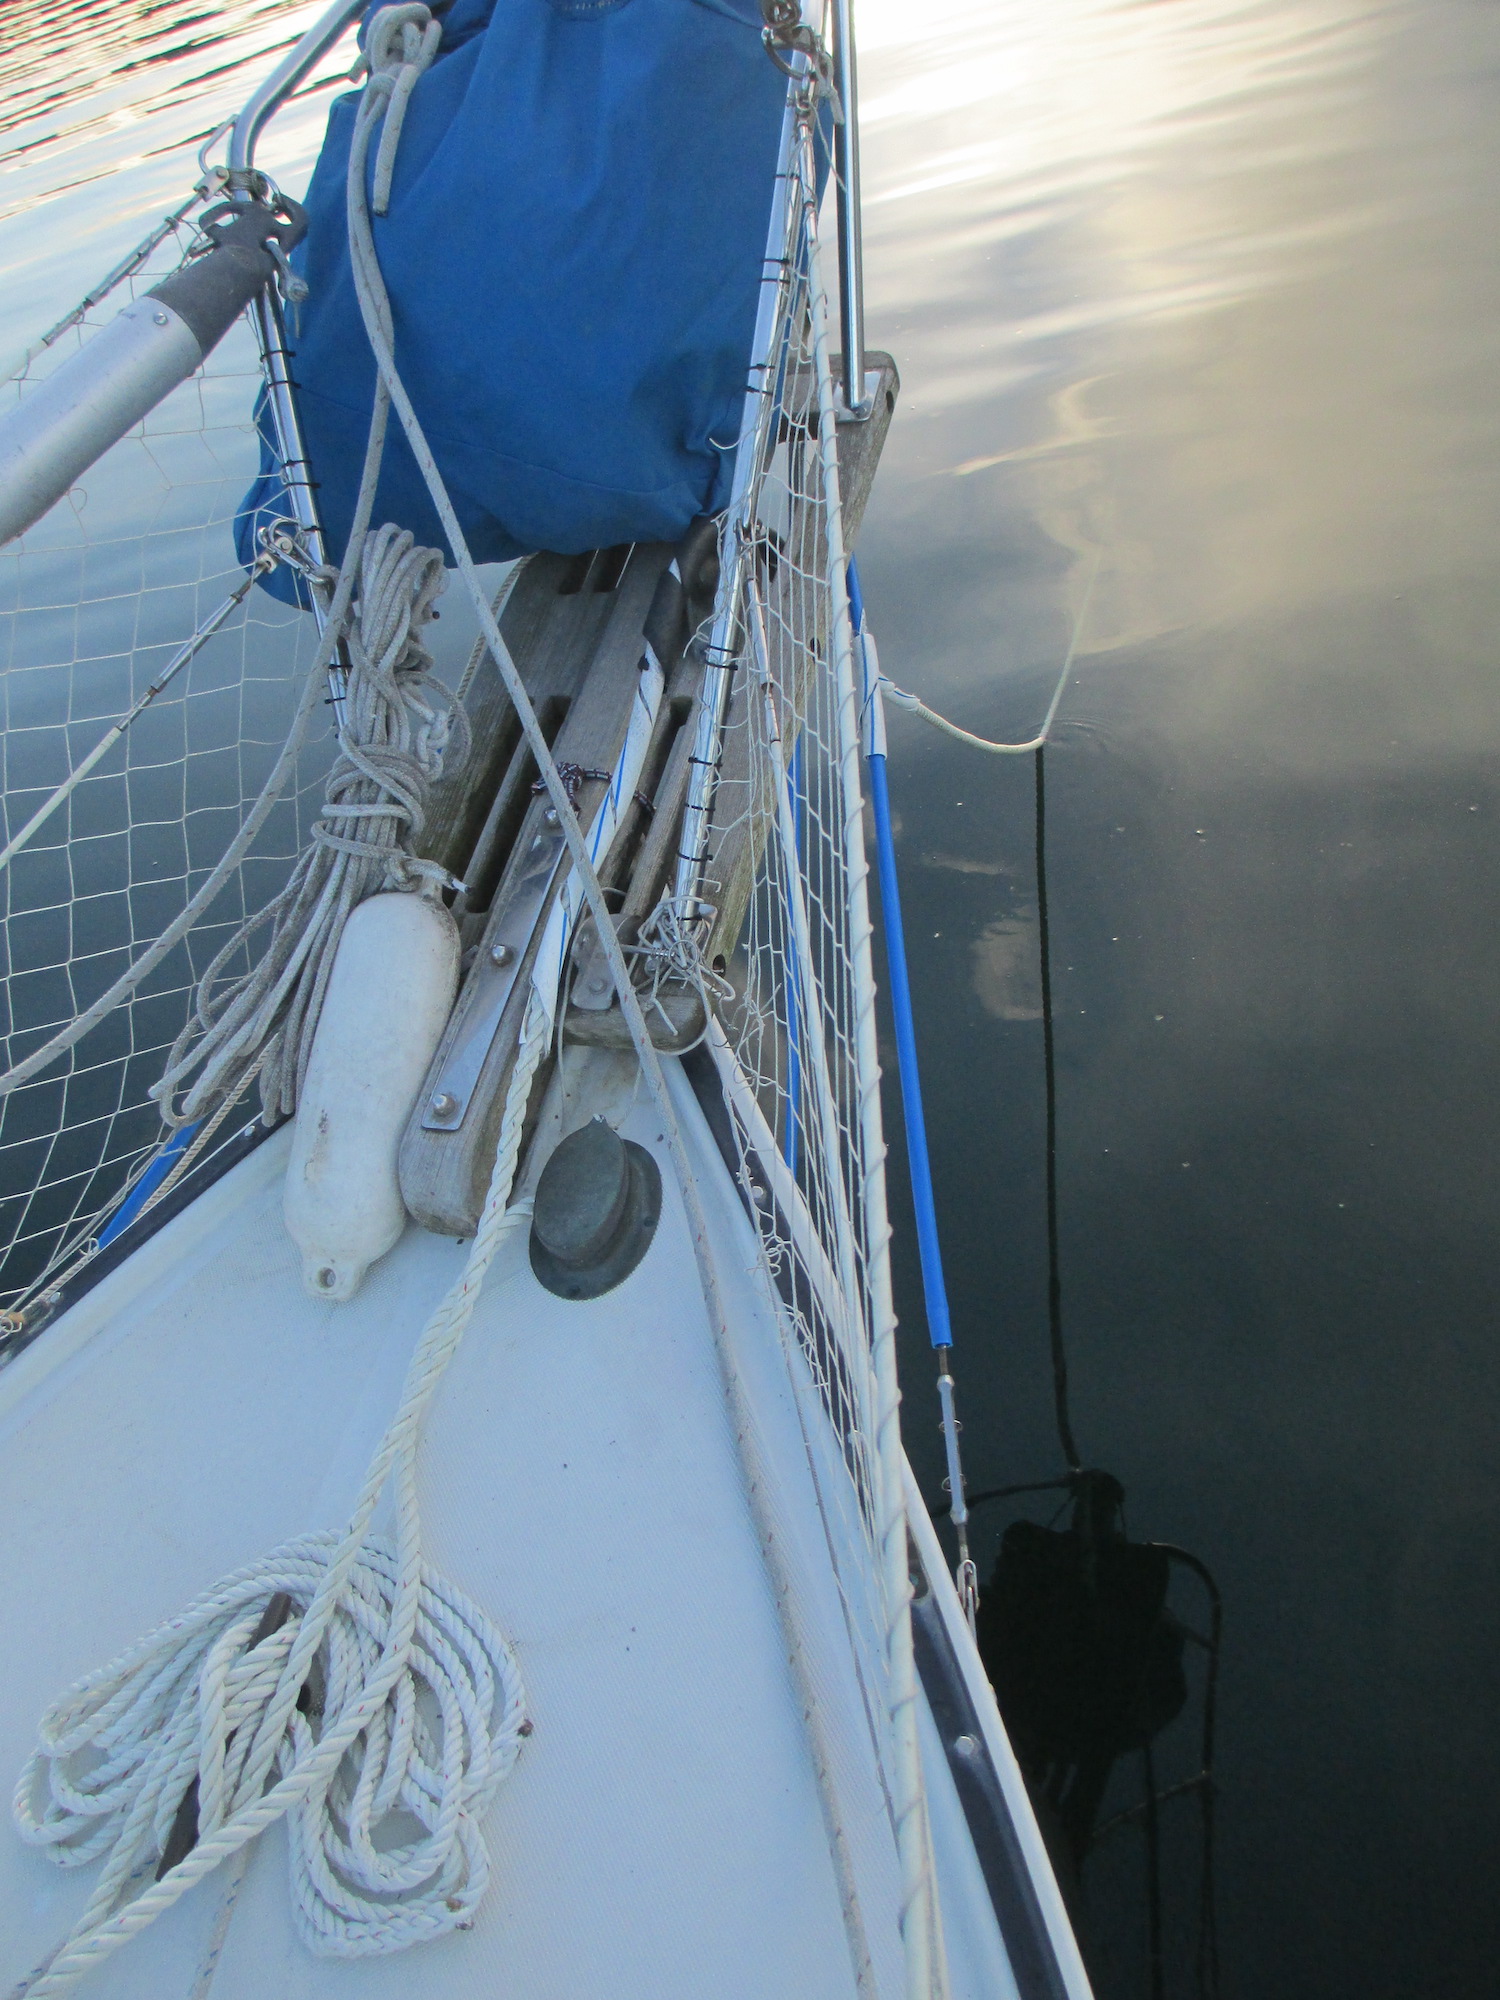 Bobstay chafe gear visible at anchor